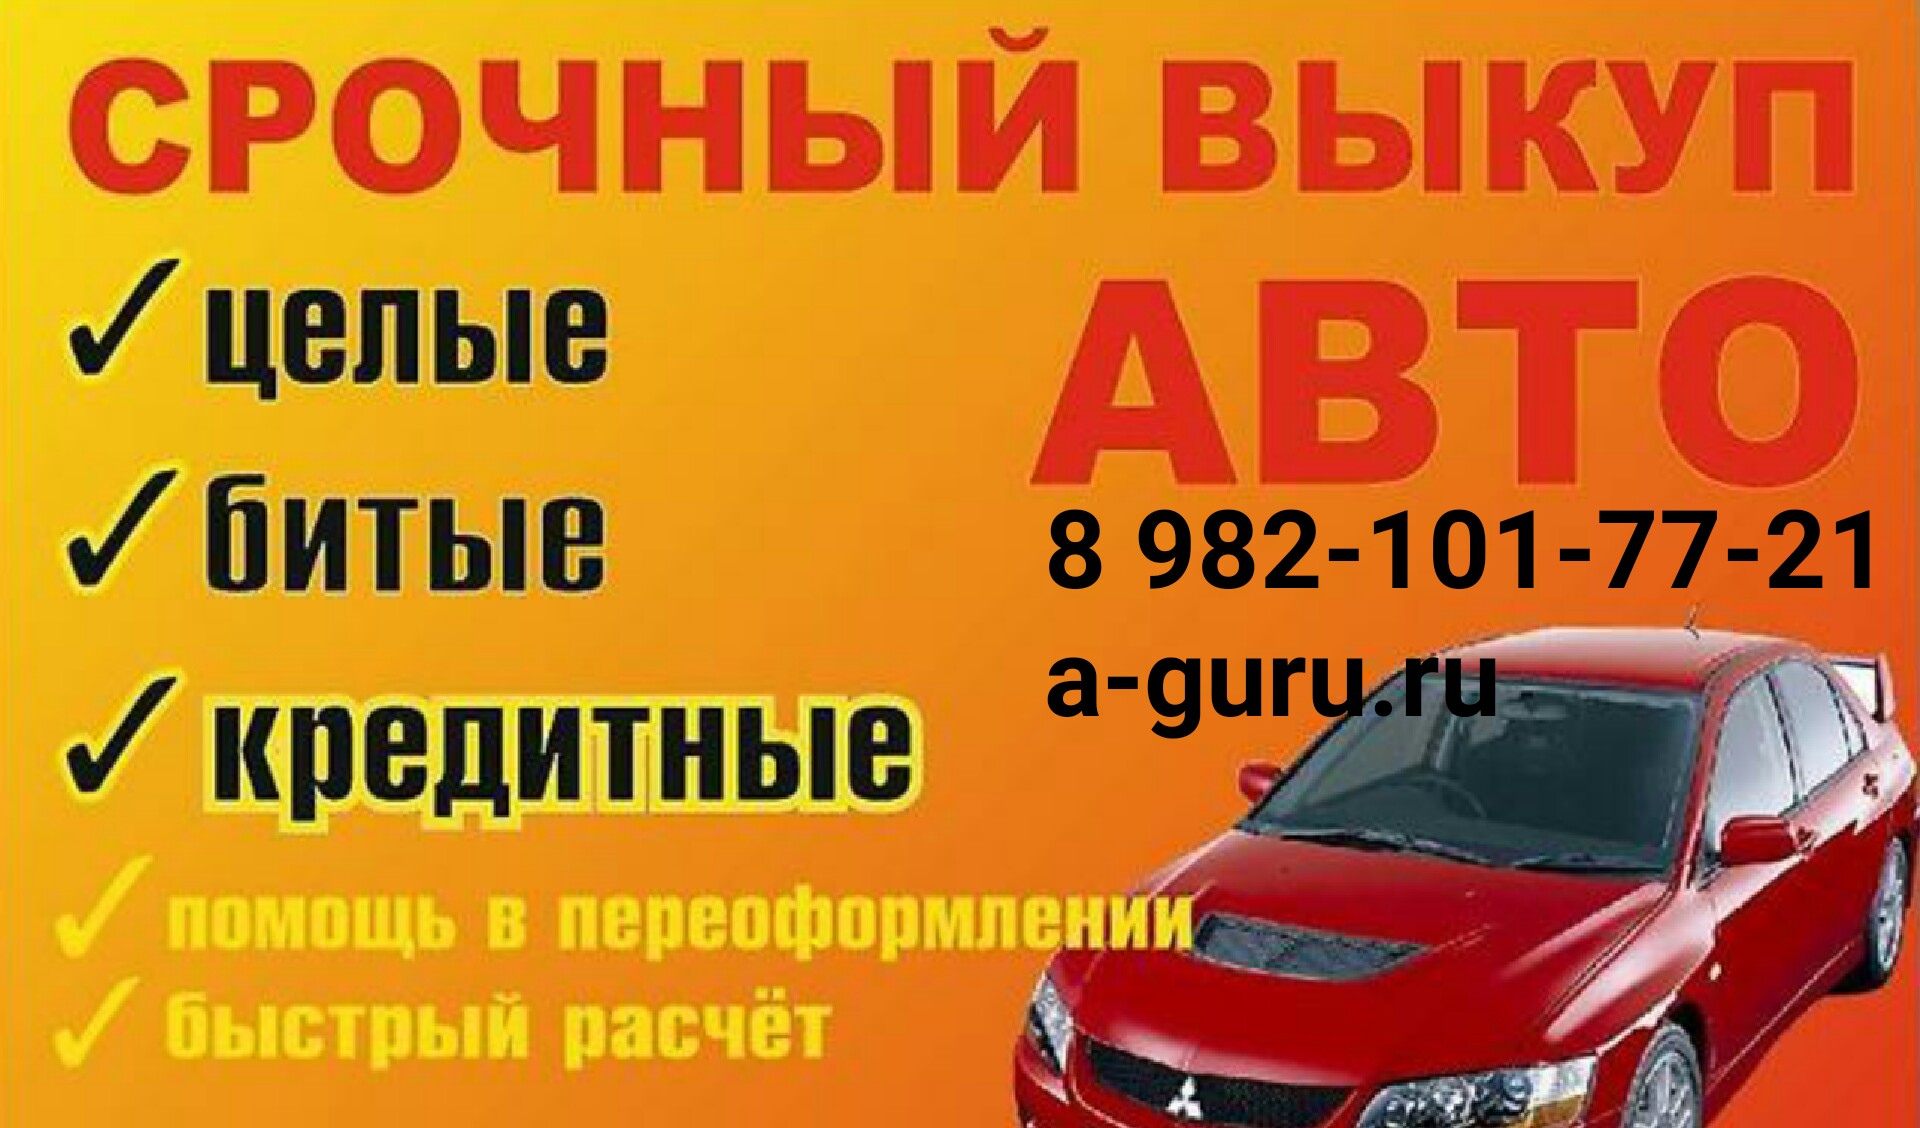 Выкуп авто Autoguru, звоните в городе Курган, фото 1, телефон продавца: +7 (982) 101-77-21